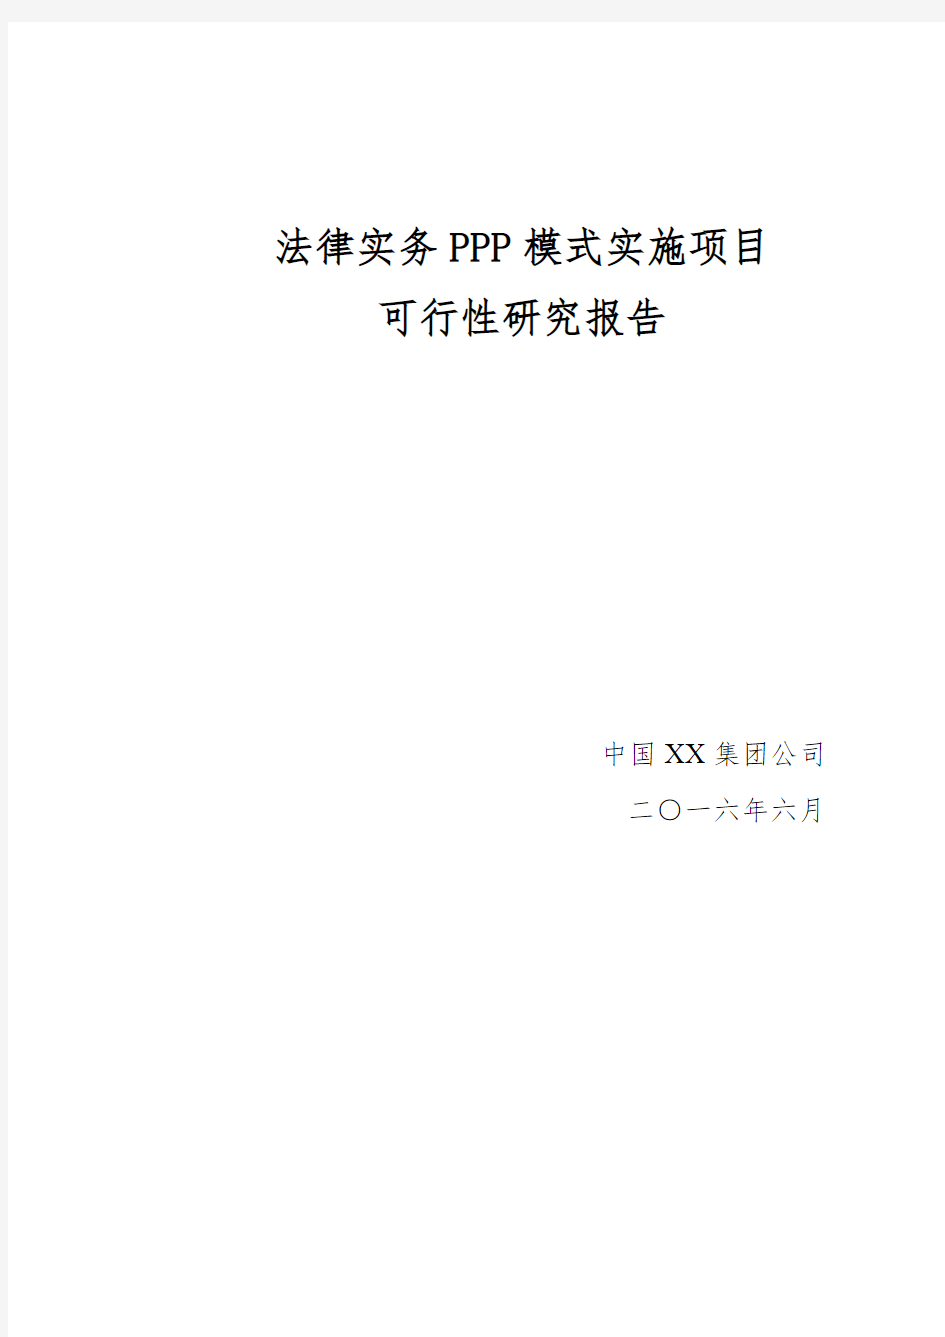 法律实务PPP模式中国XX集团公司实施项目可行性研究报告